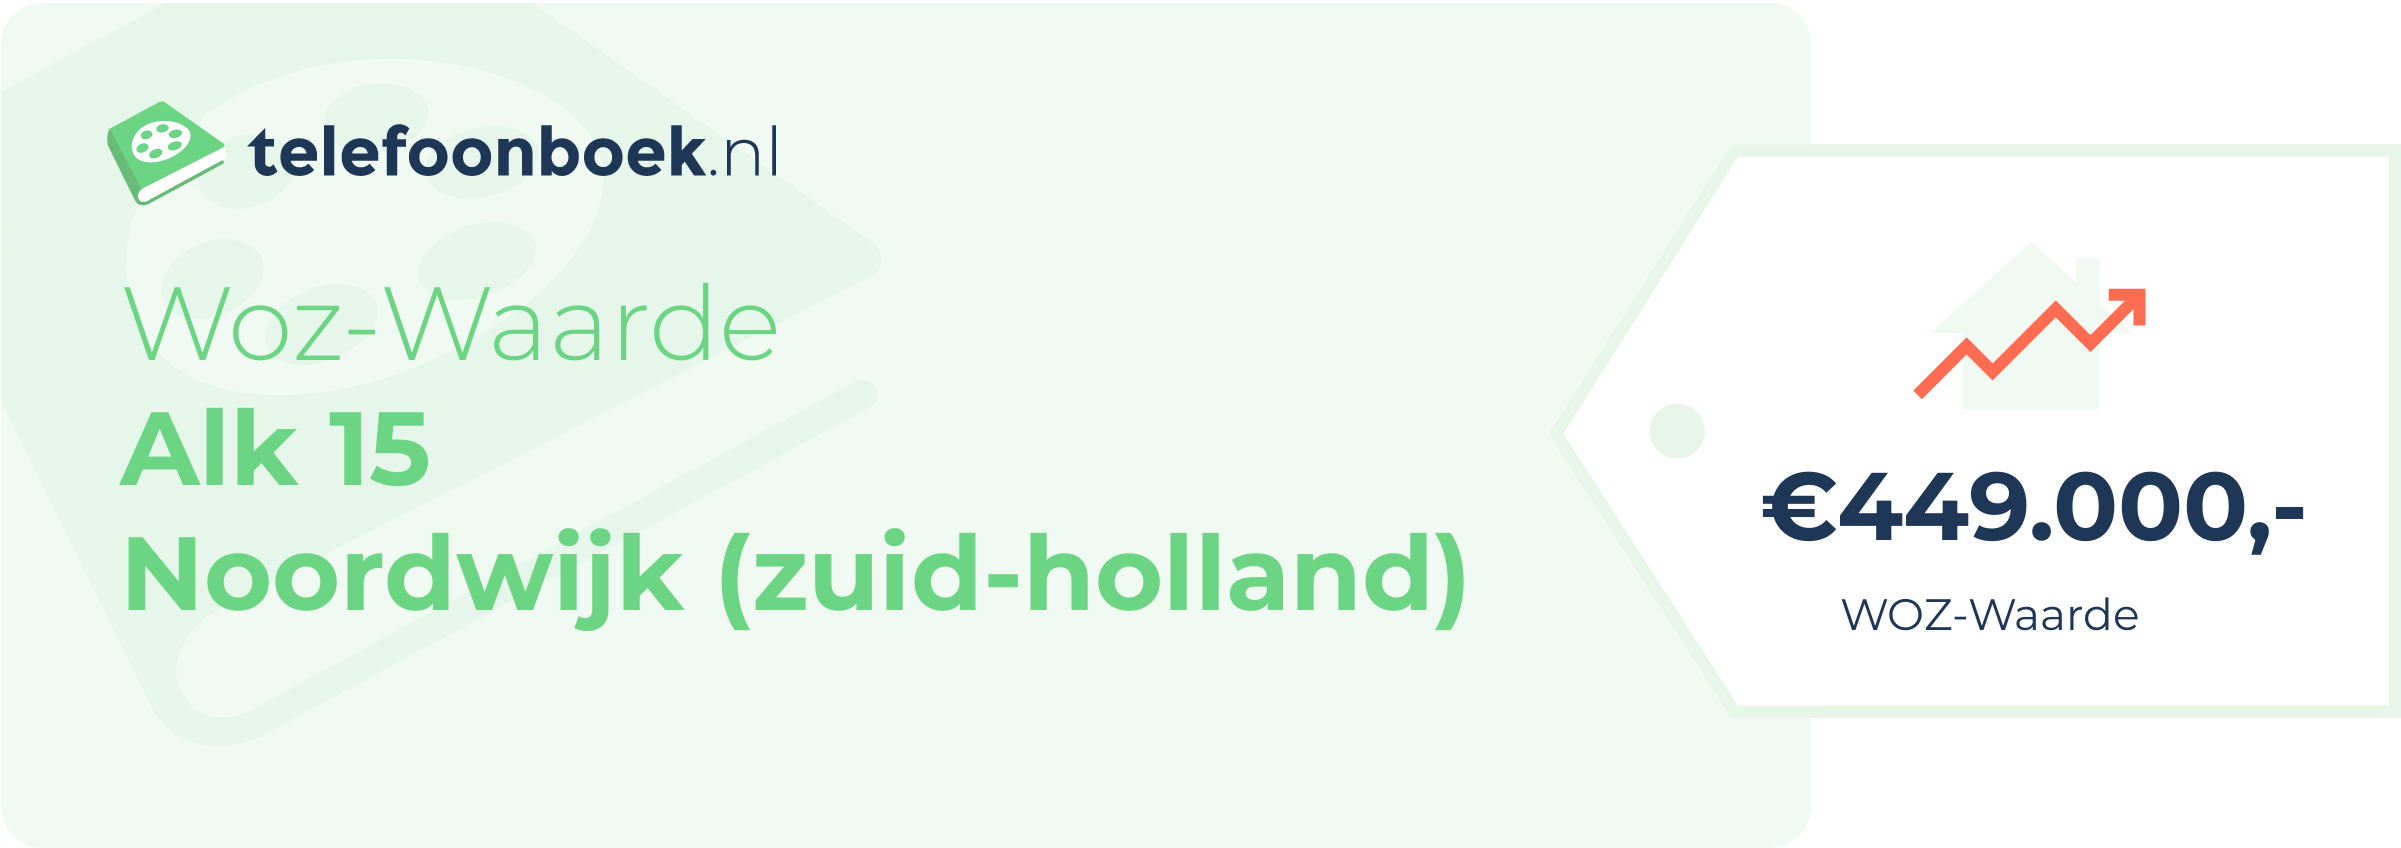 WOZ-waarde Alk 15 Noordwijk (Zuid-Holland)